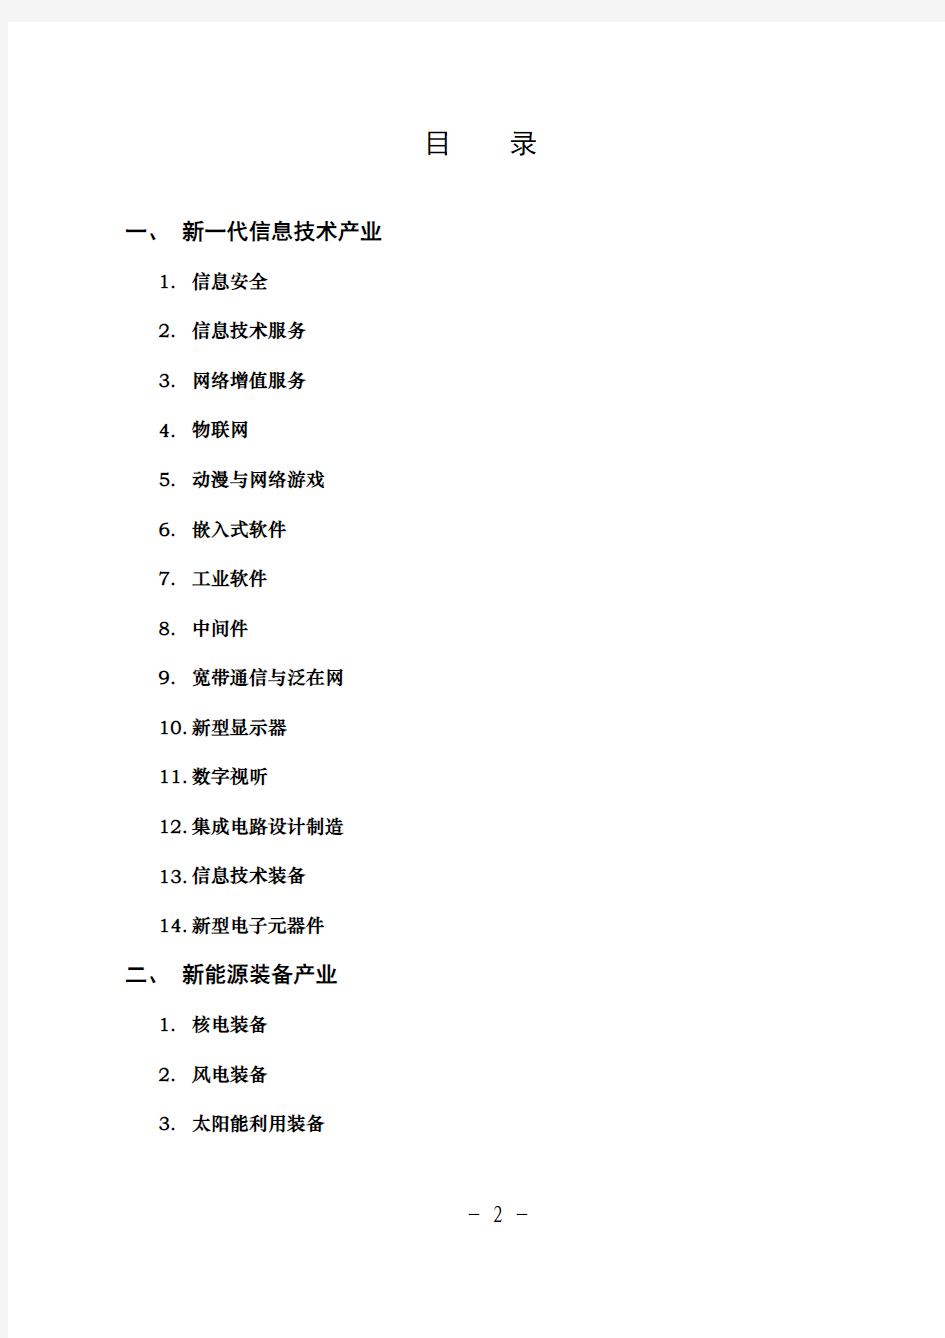 四川省经济和信息化委员会战略性新兴产业发展指导目录(2011 年)